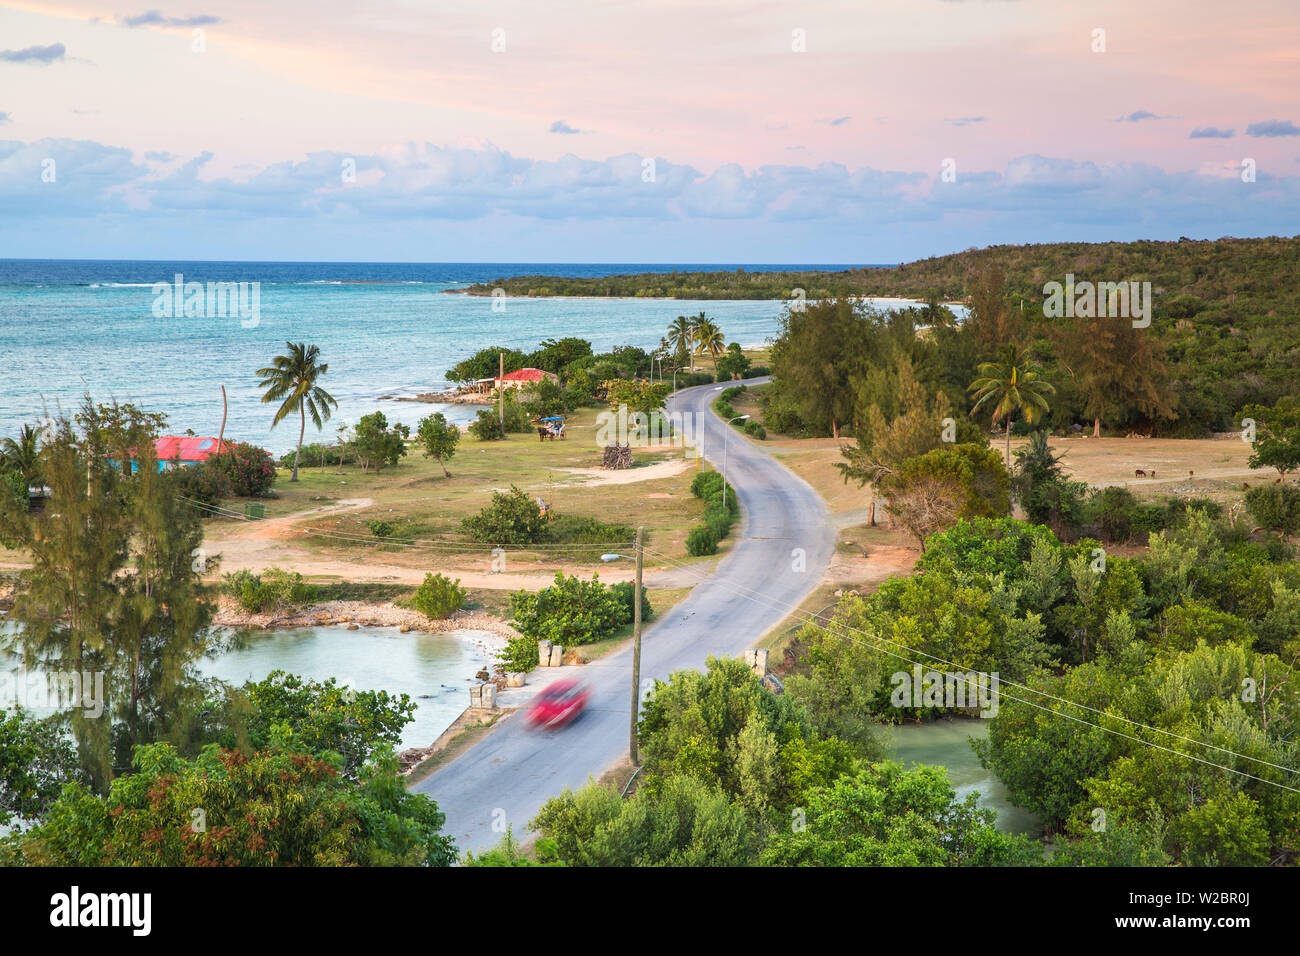 Cuba, Holguin, Playa Guardalvaca, Coastal road at Playa Guardalvaca Stock Photo